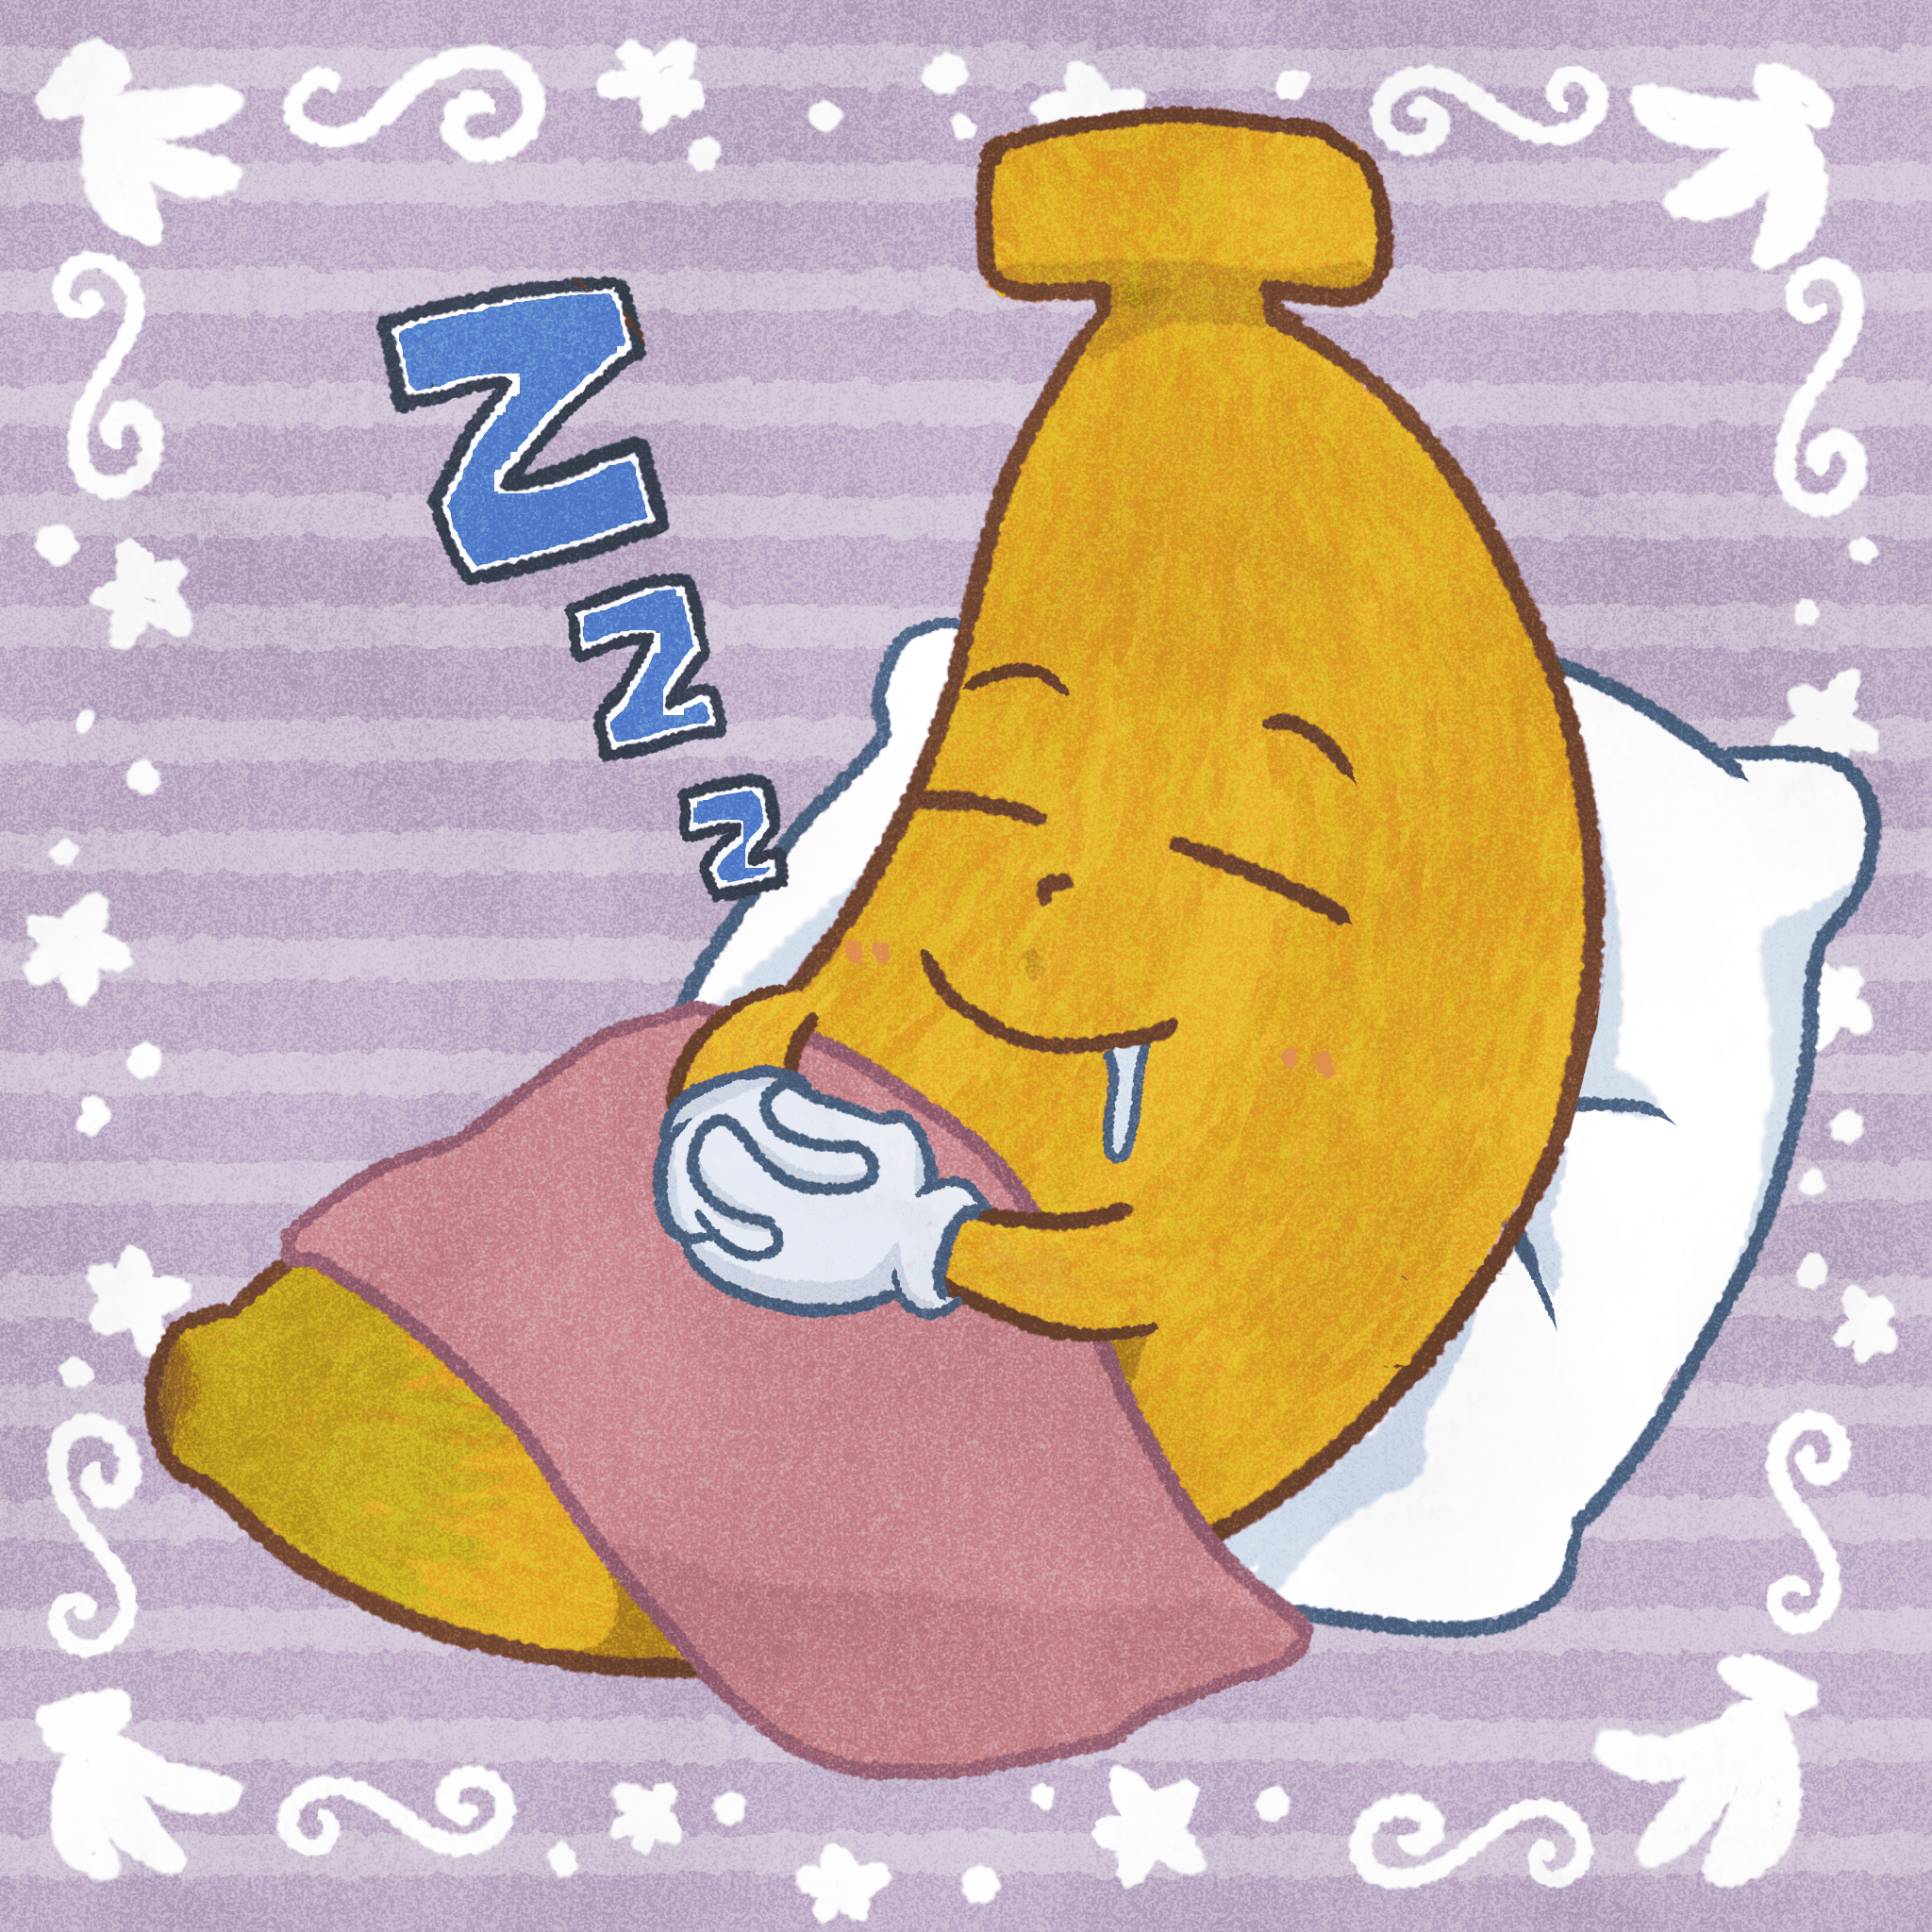 #006 sleeping banana